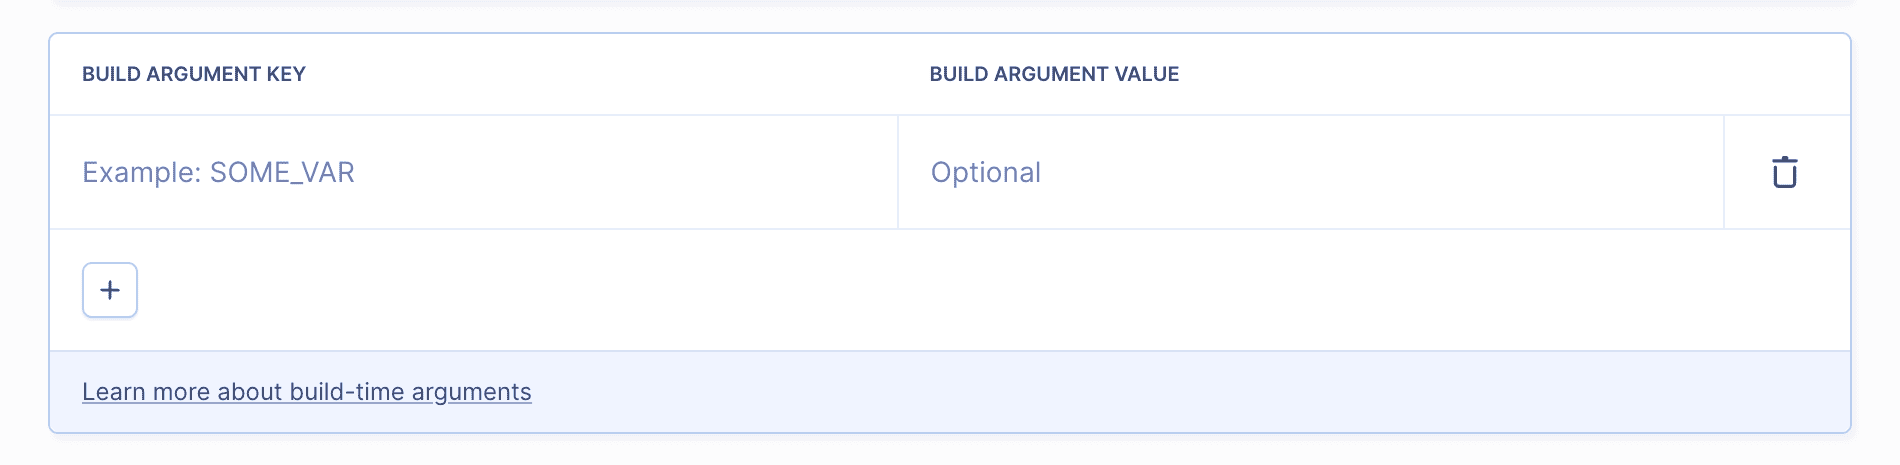 Build arguments